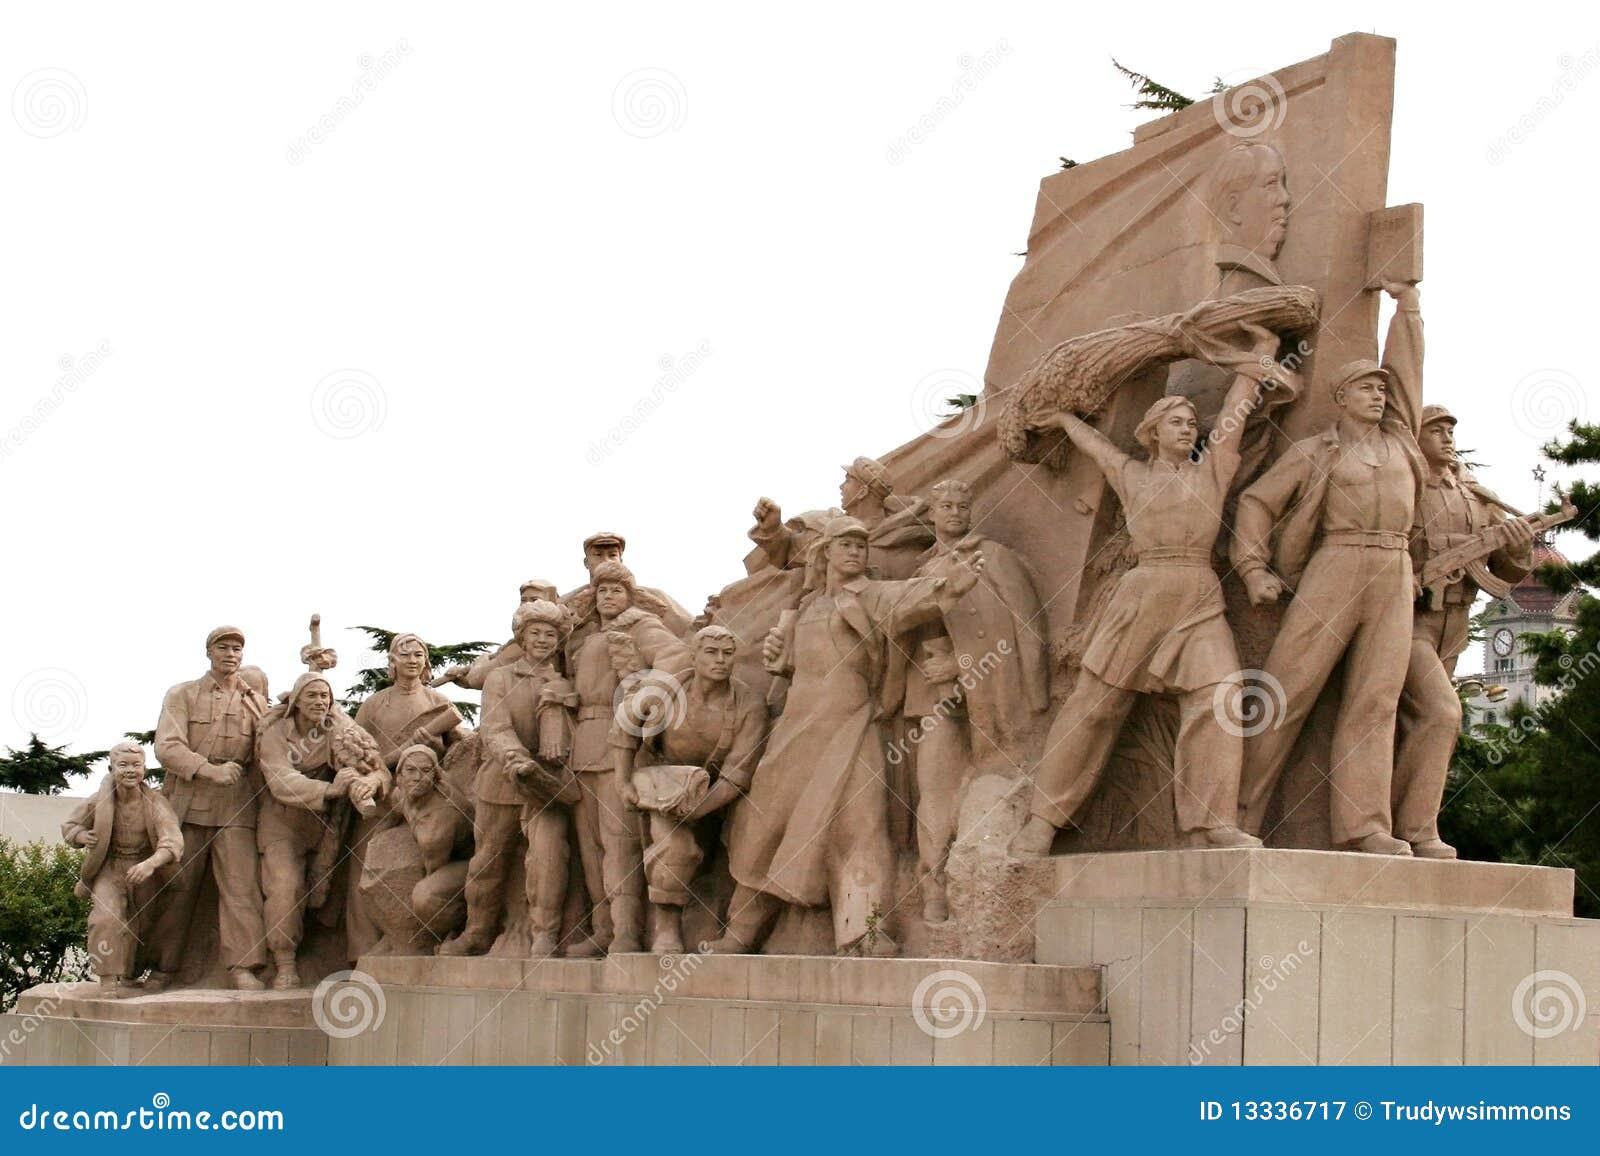 communist/mao memorial, beijing